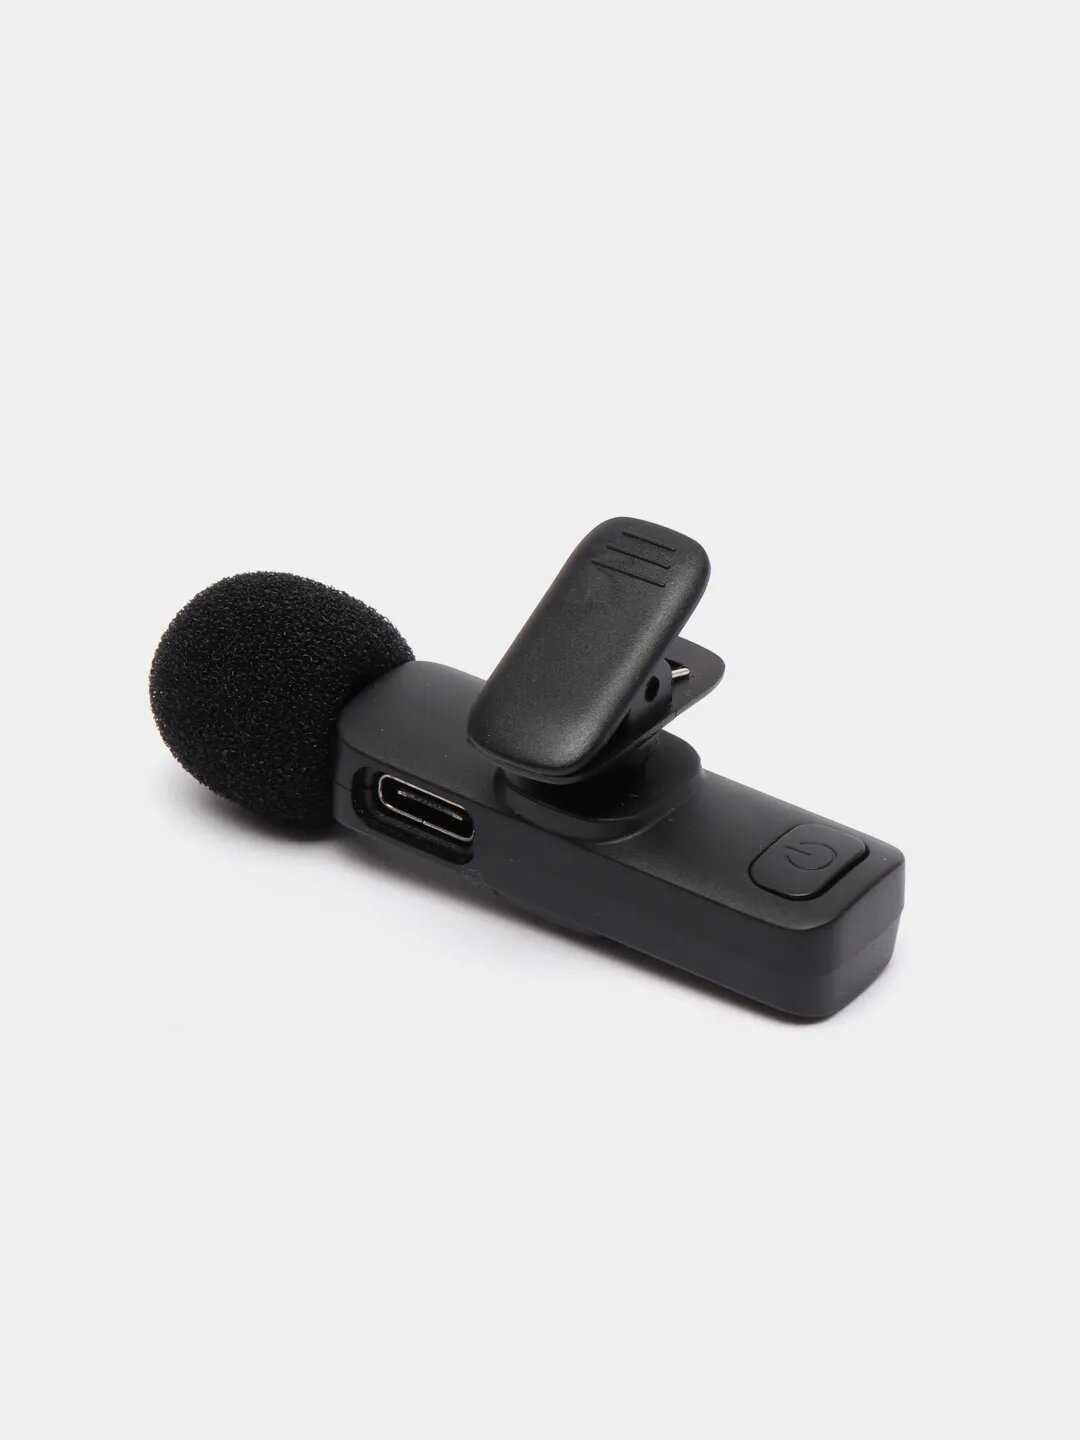 Петличный беспроводной микрофон новый K11 Type-C или Lightning (iPhone